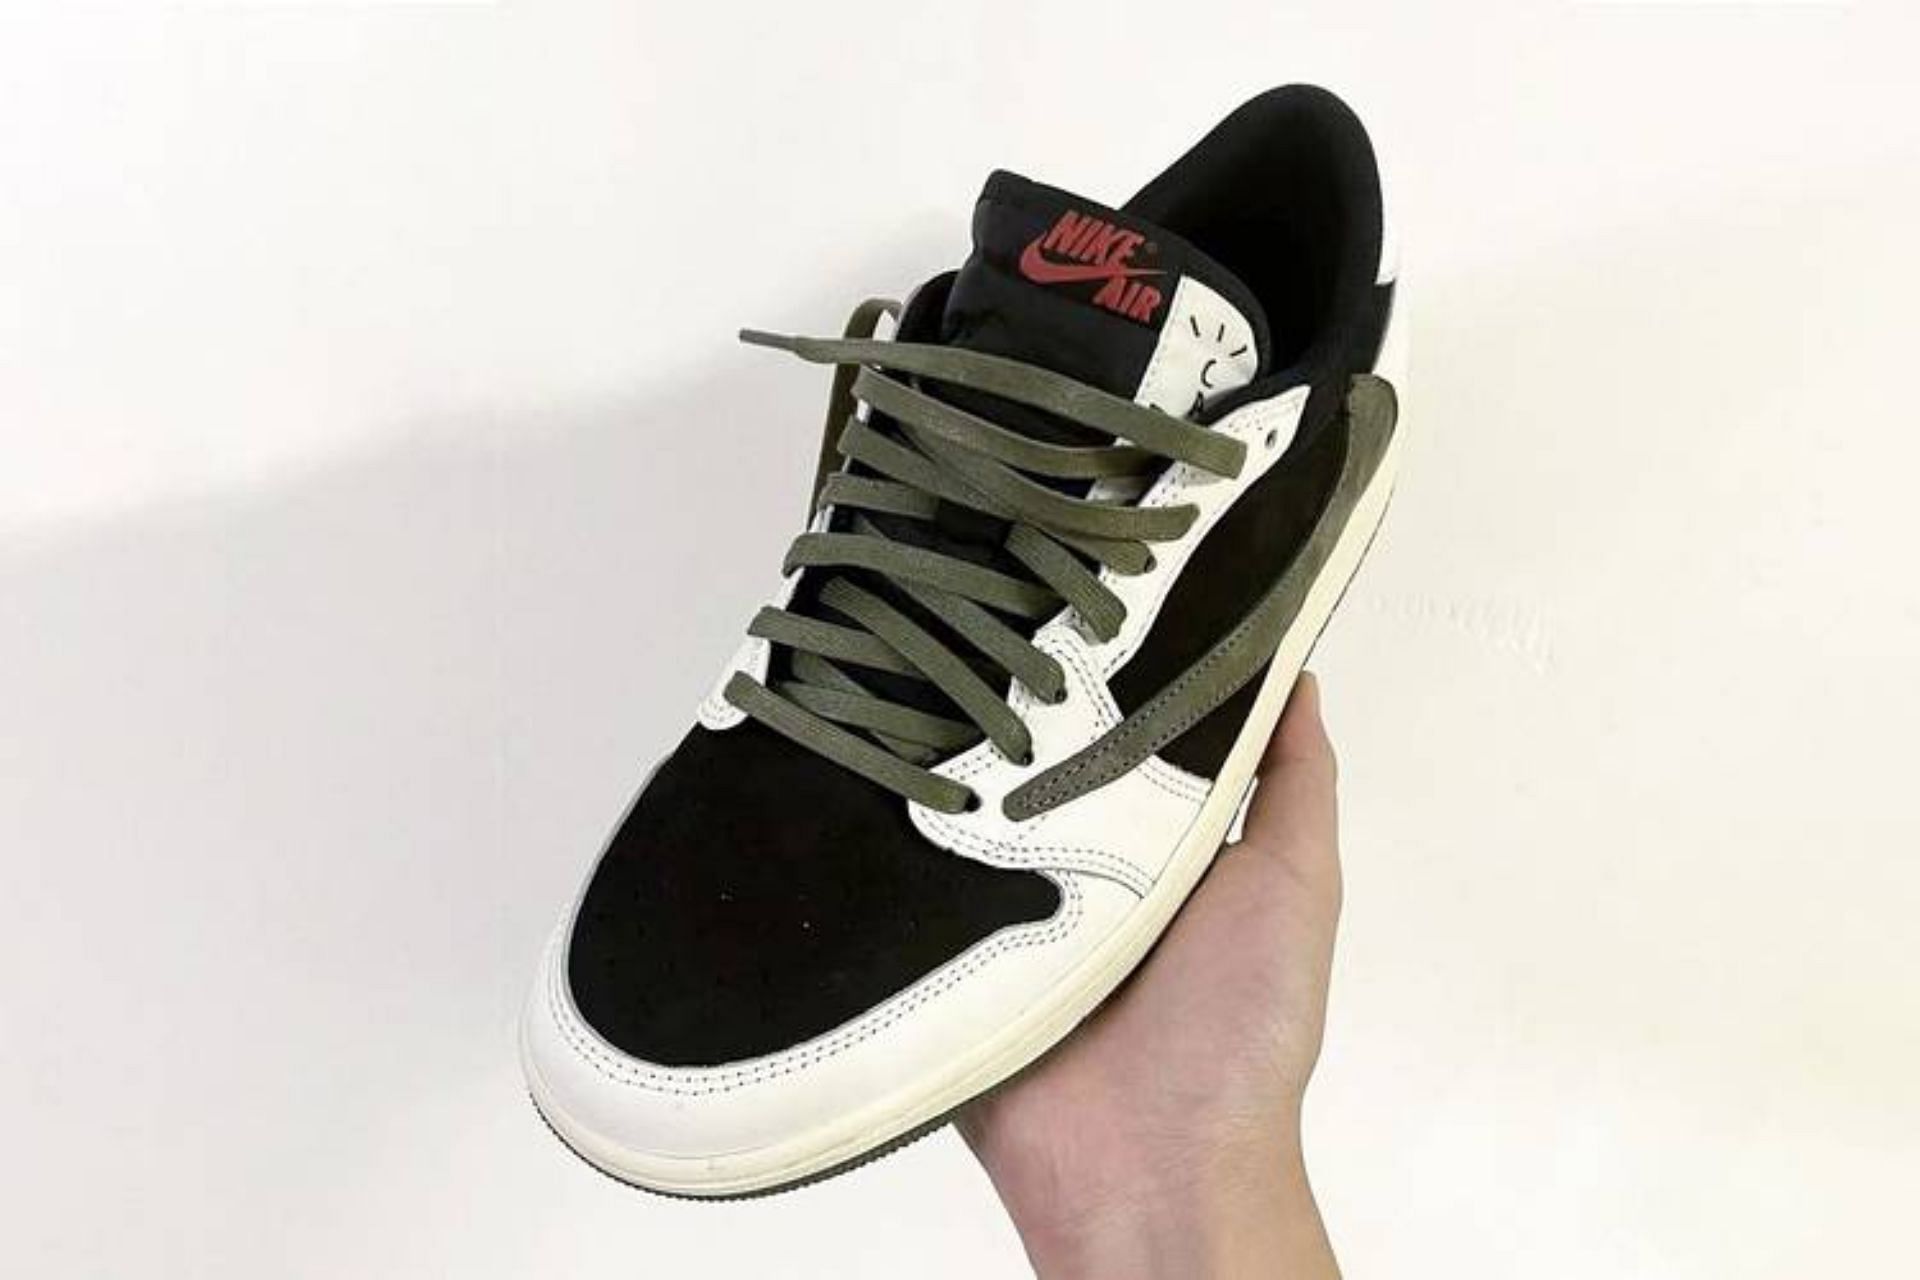 Take a closer look at the Air Jordan 1 Low Olive shoe (Image via Instagram/@die_sel666)